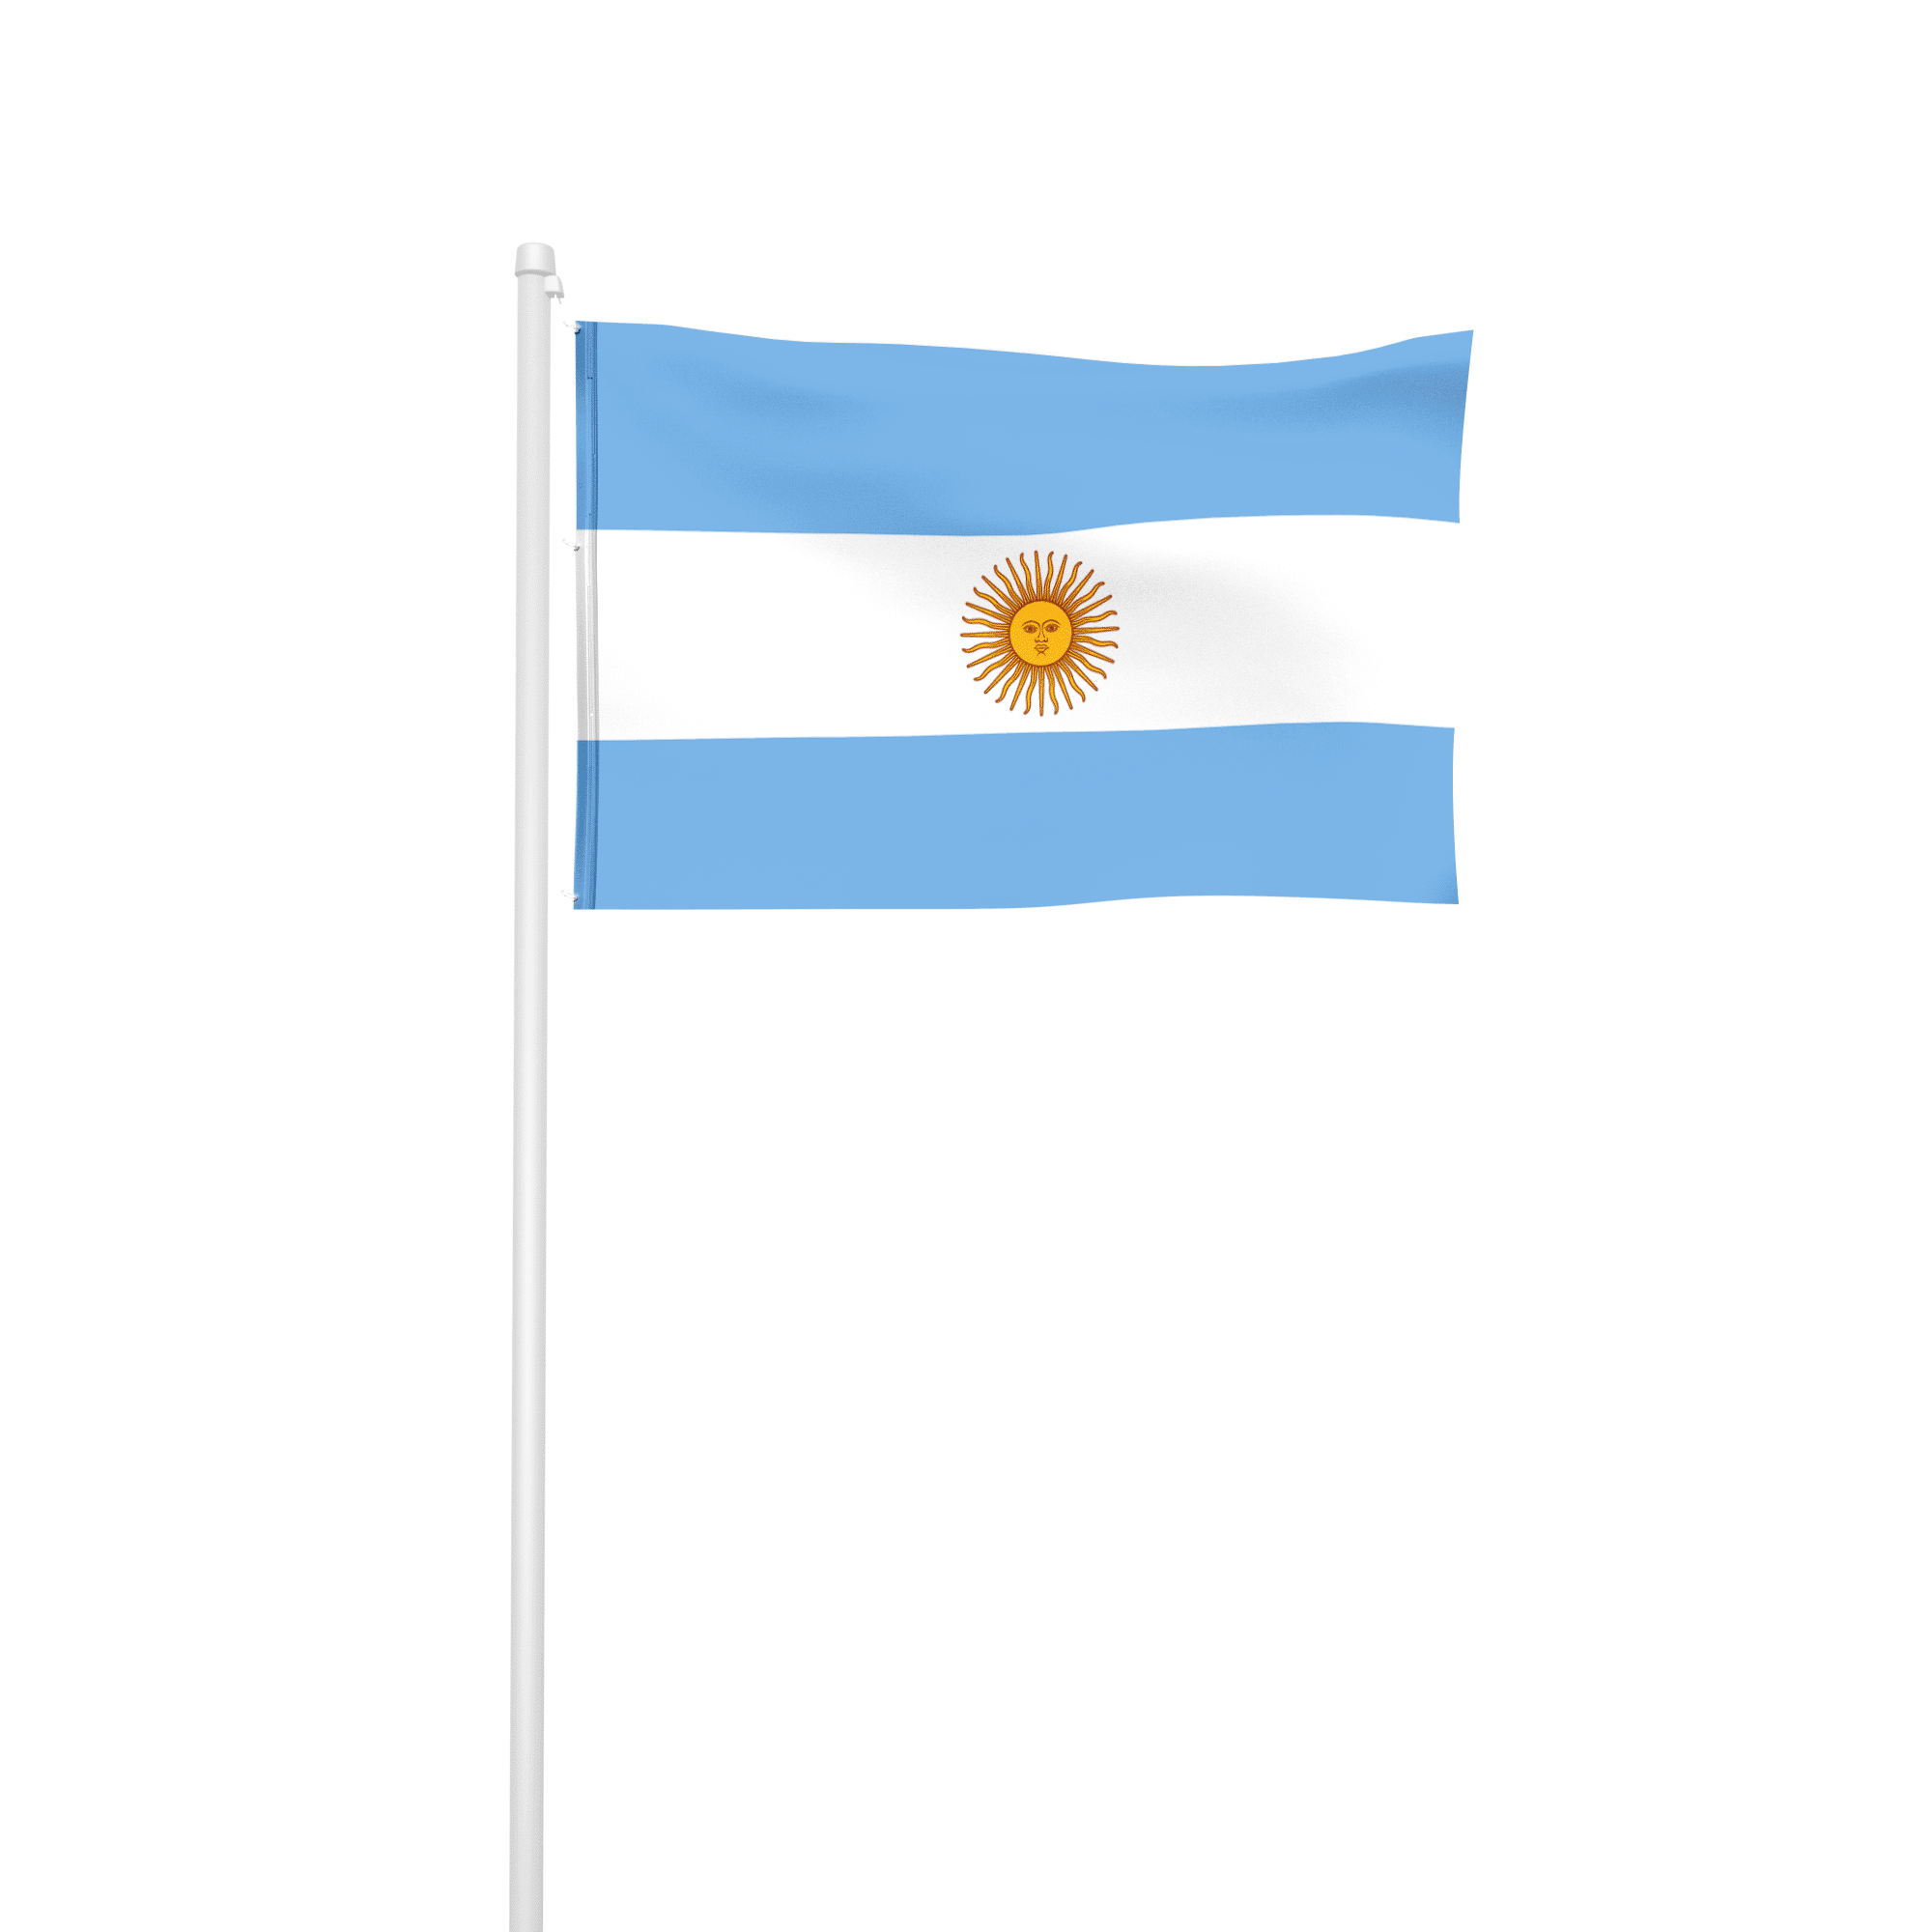 Argentinien - Hissfahne